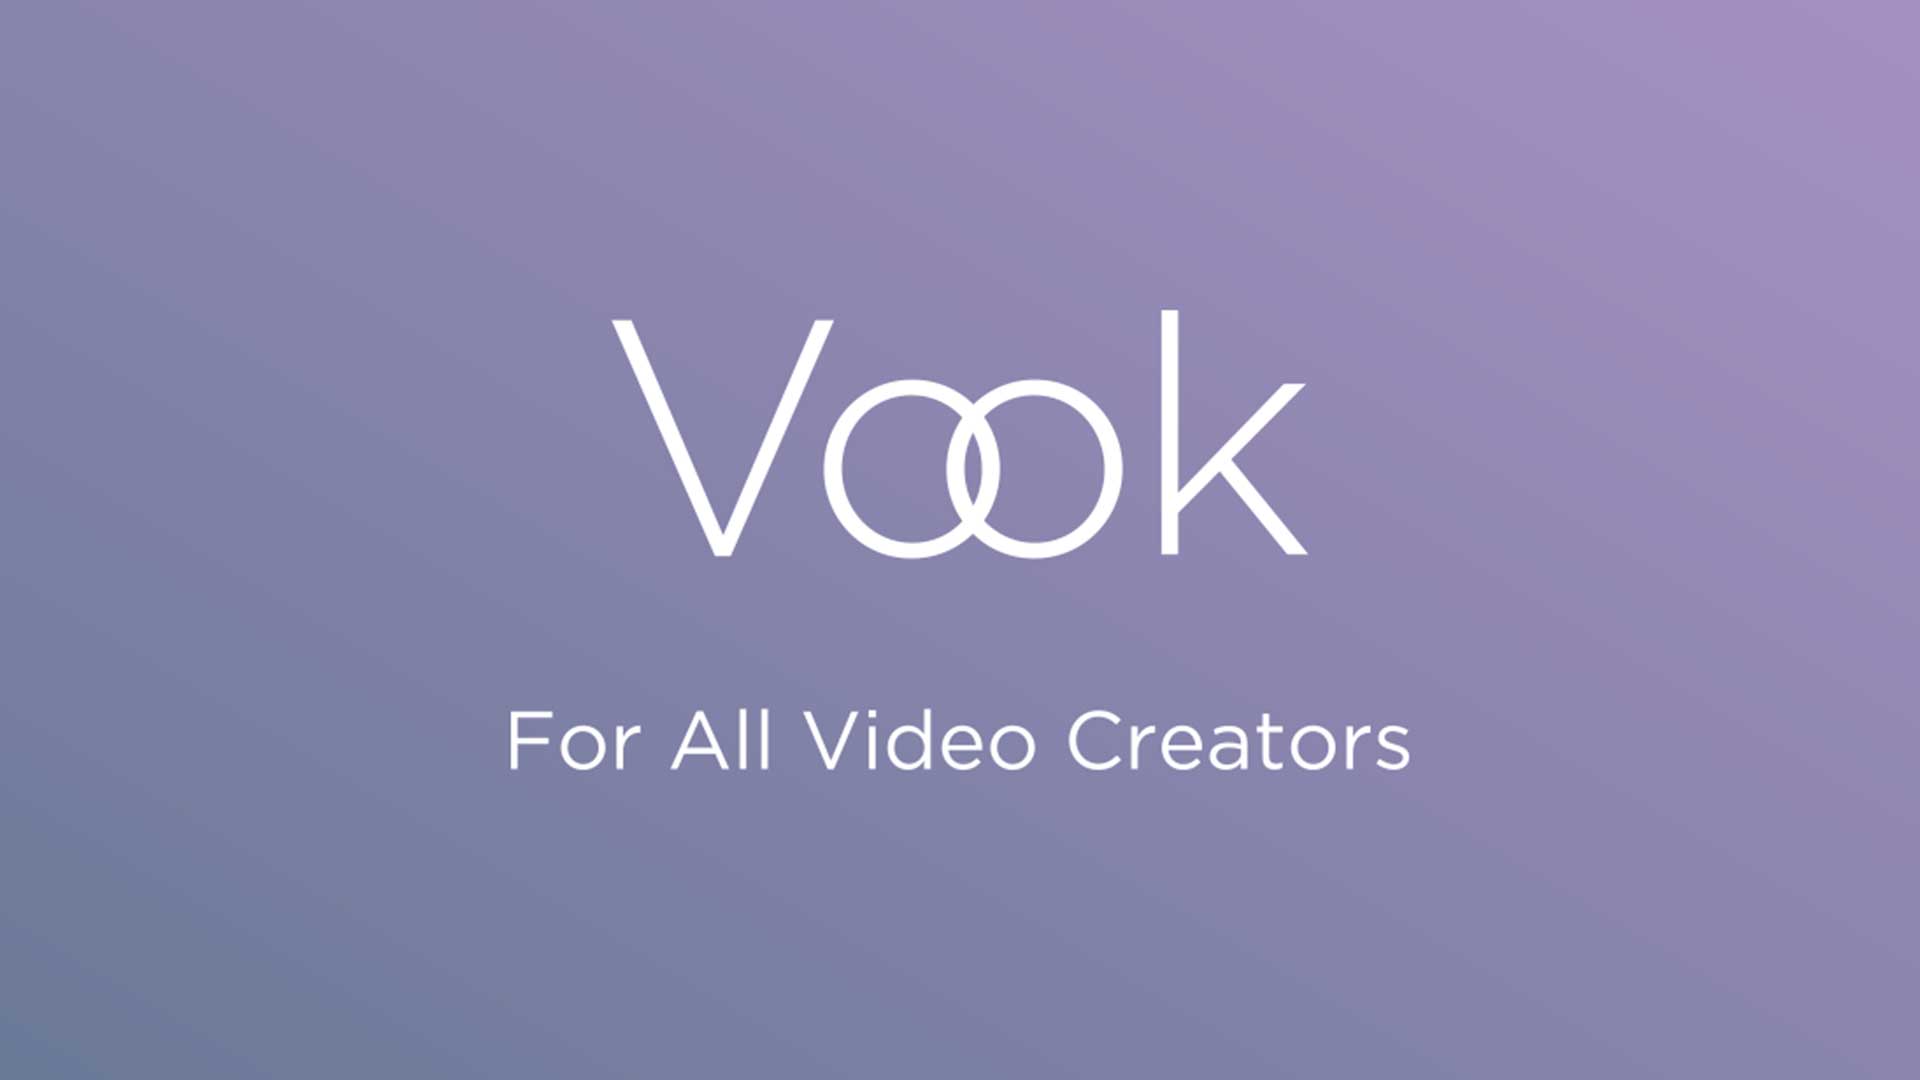 株式会社Vook